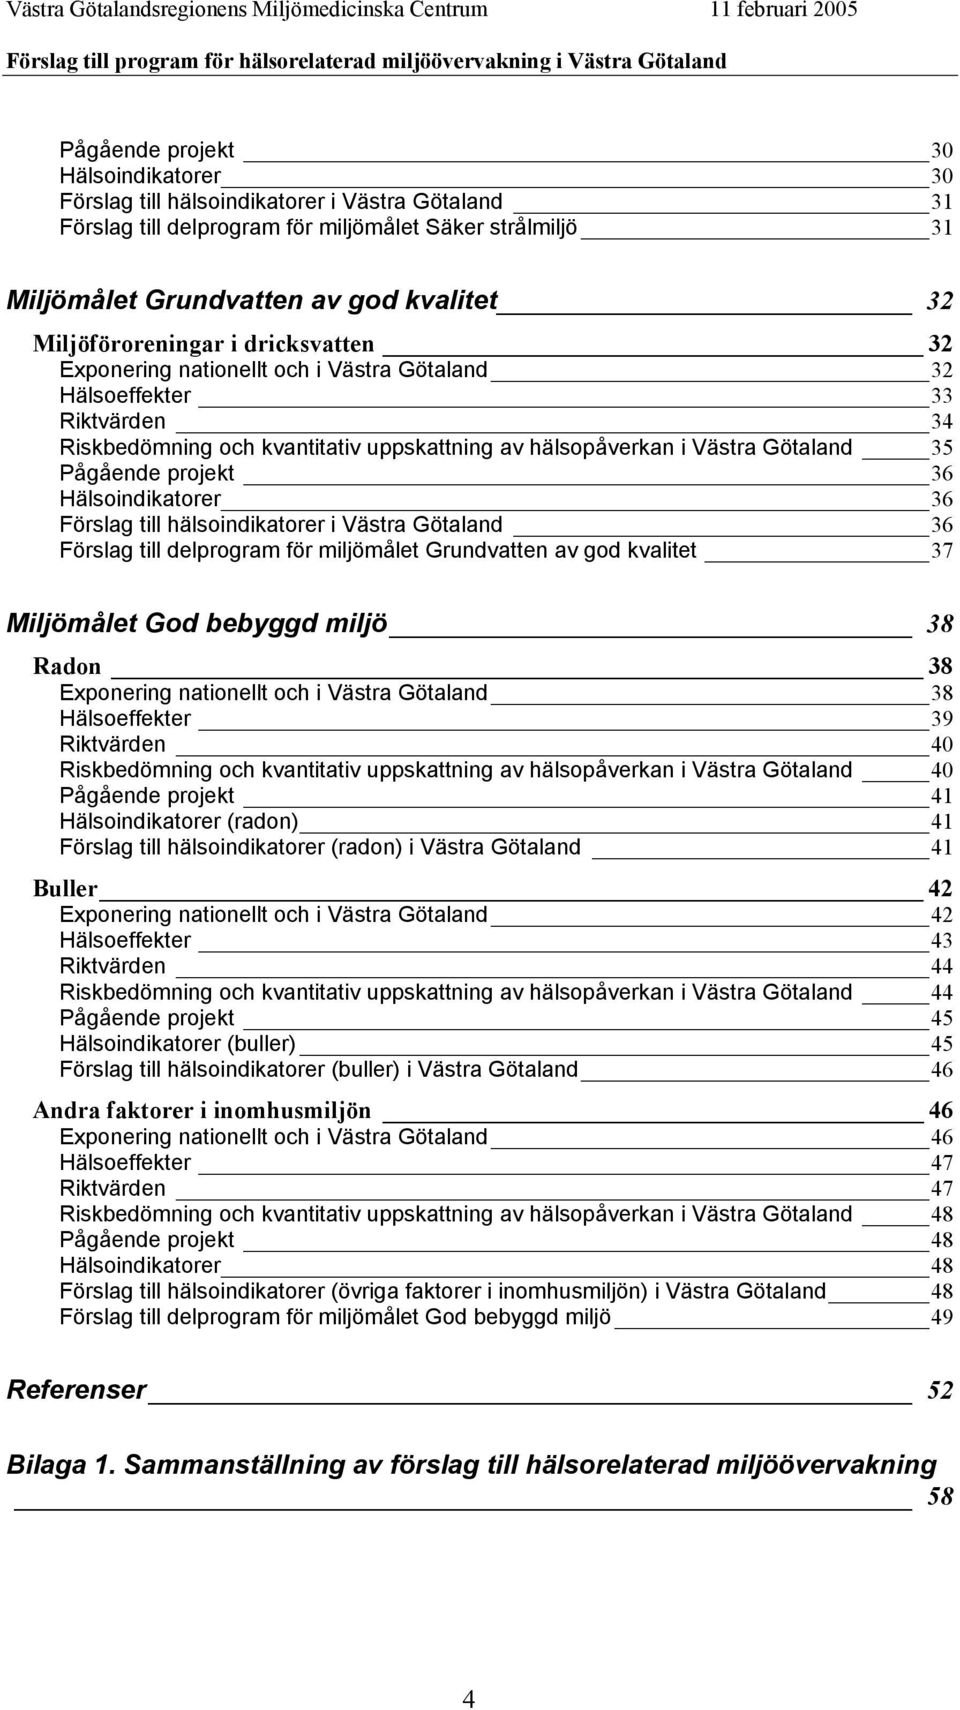 Pågående projekt 36 Hälsoindikatorer 36 Förslag till hälsoindikatorer i Västra Götaland 36 Förslag till delprogram för miljömålet Grundvatten av god kvalitet 37 Miljömålet God bebyggd miljö 38 Radon